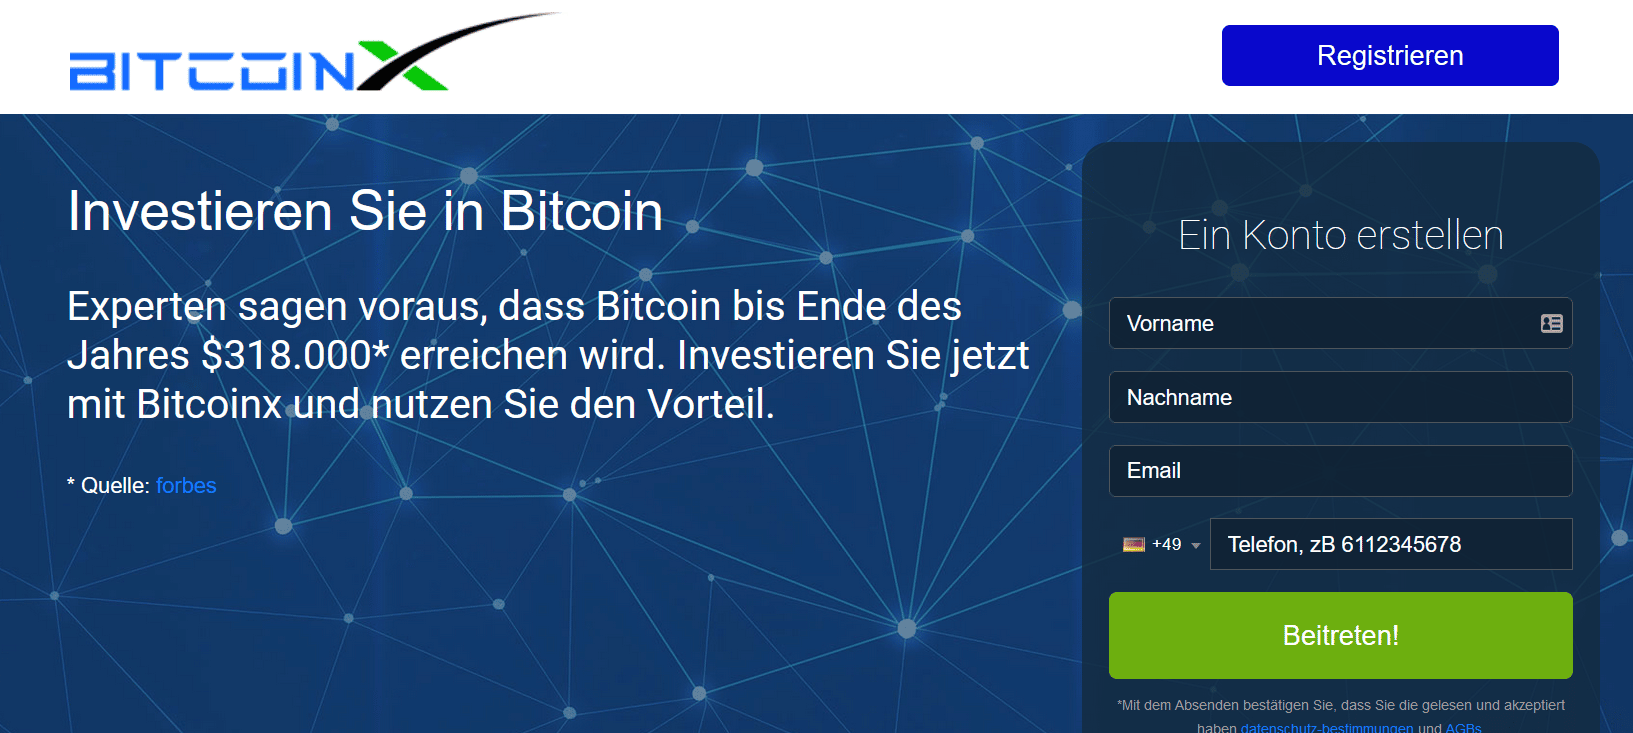 BitcoinX Test